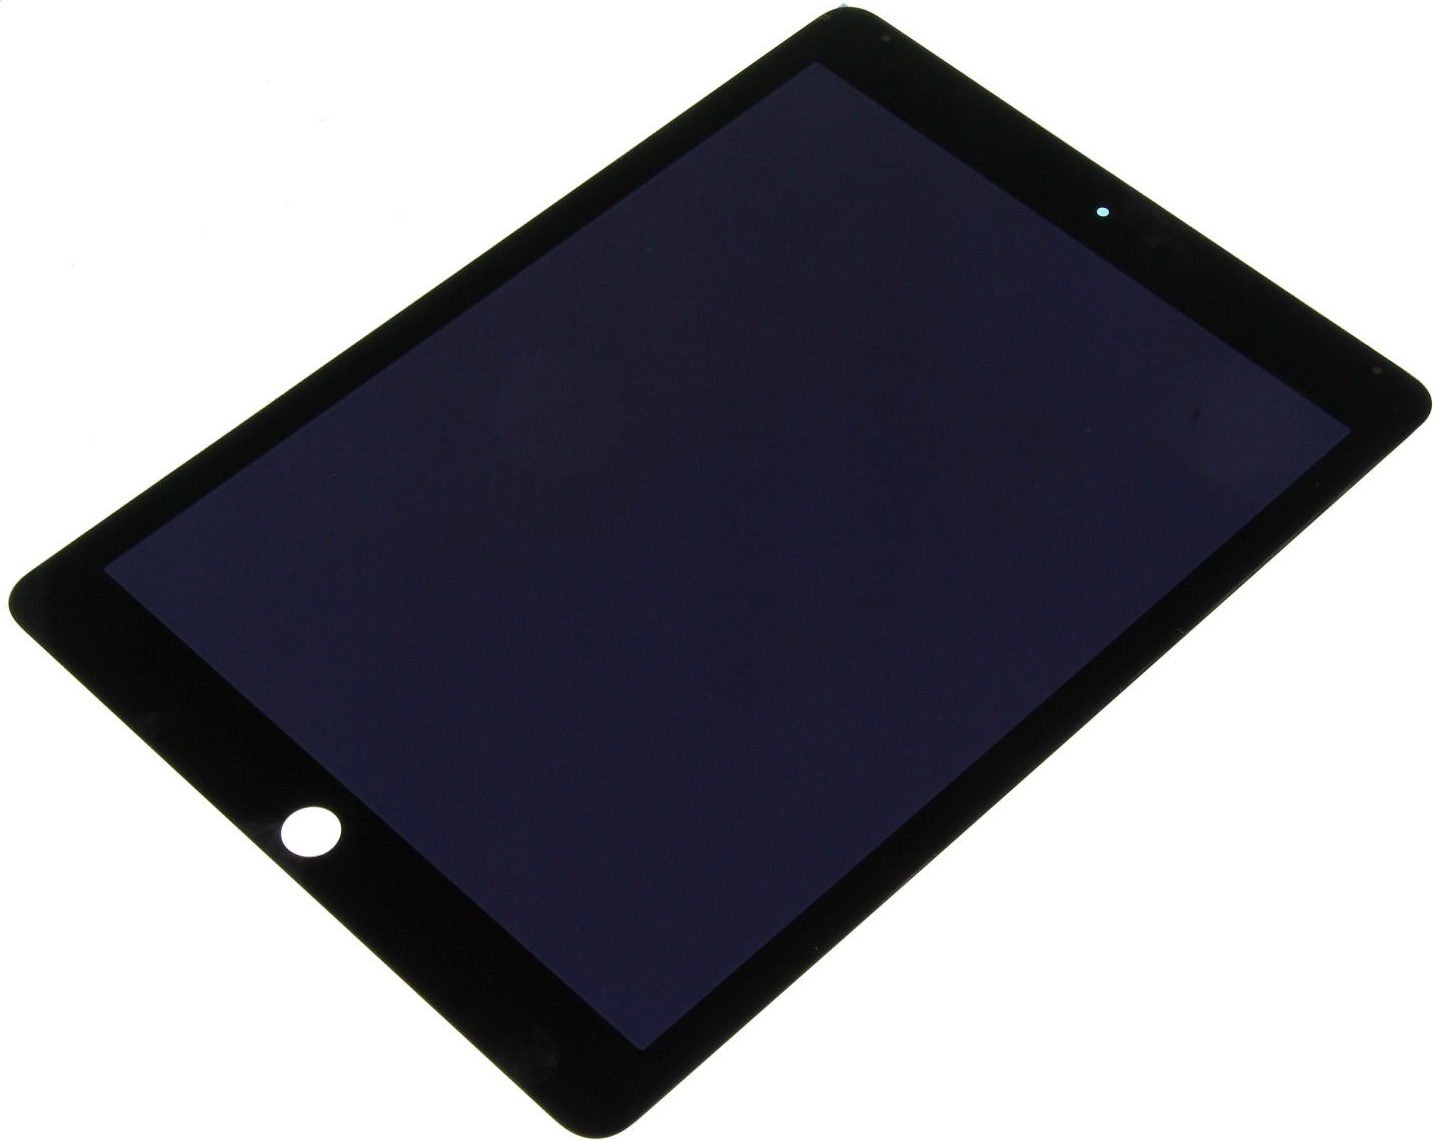 krijgen staan Mijnwerker ᐅ • Voorgemonteerd iPad Air 2 Scherm (LCD + Touchscreen) A+ Kwaliteit Zwart  | Snel en Goedkoop: PhoneGigant.nl